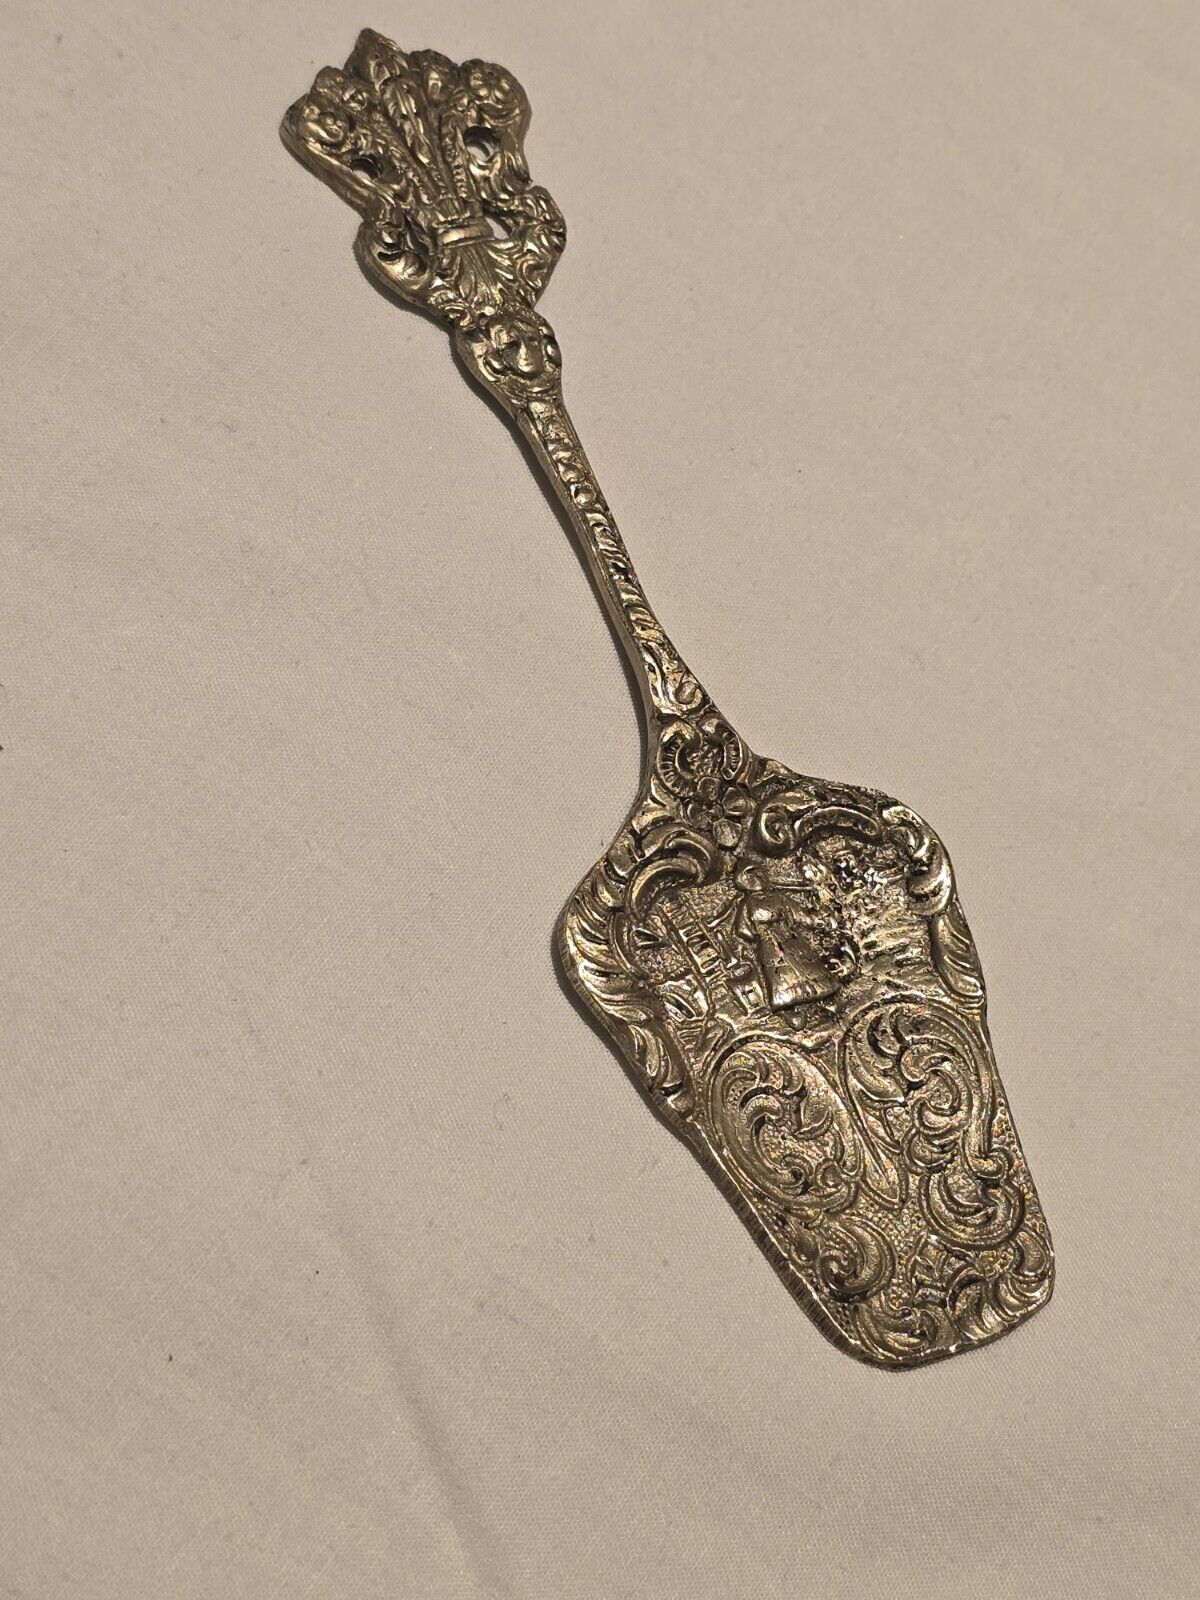 Antique Ornate Serving italian Statue Figurin  Copper Metalware Spoon  Rare